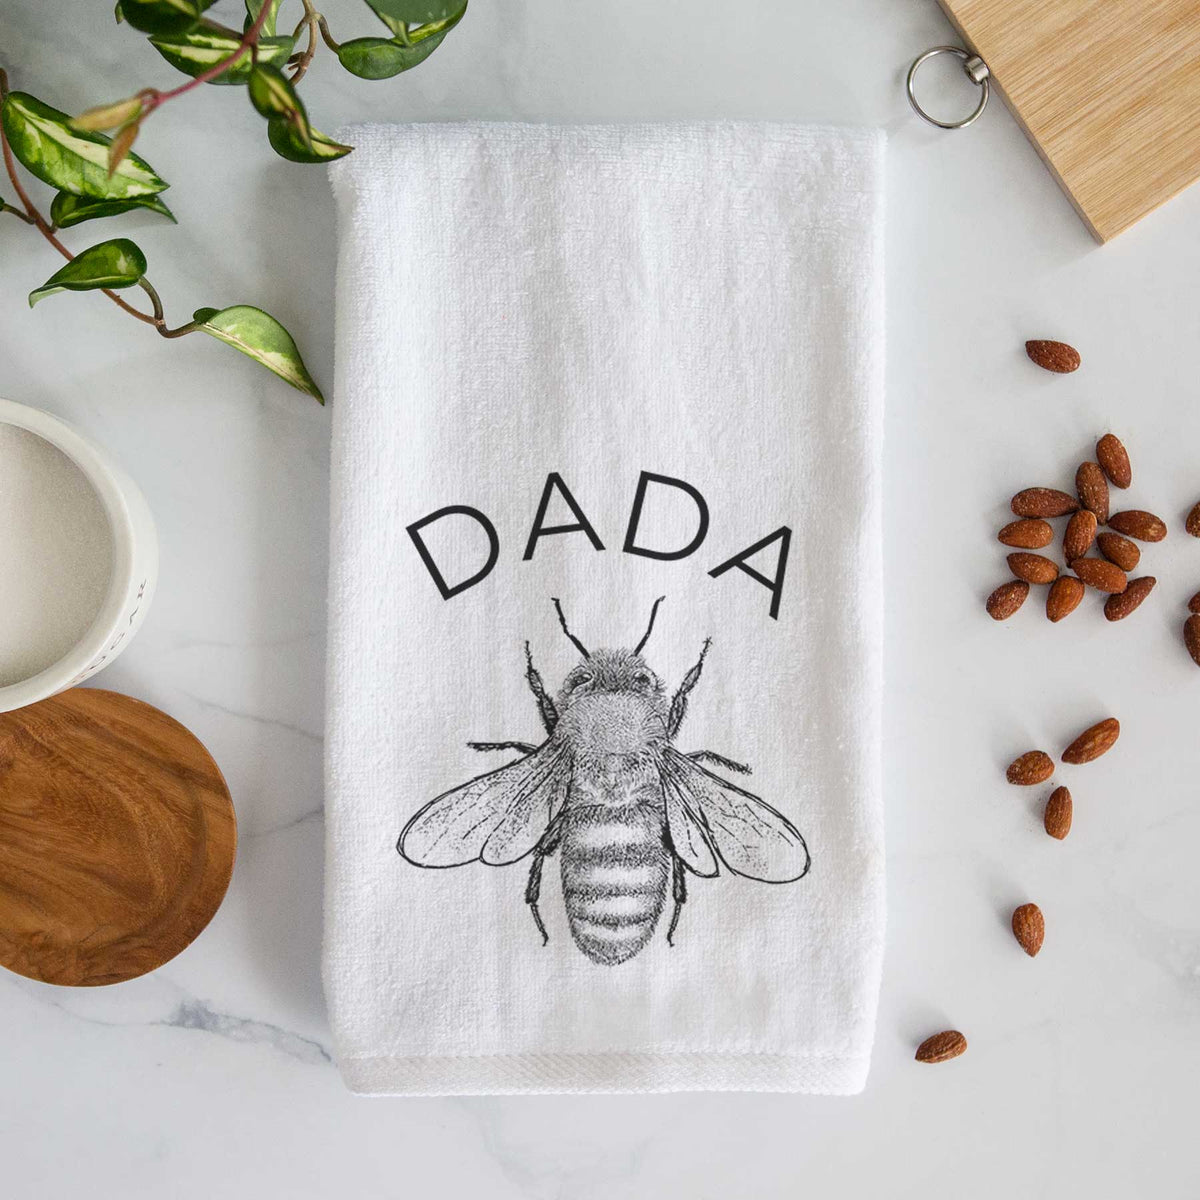 Dada Bee Hand Towel